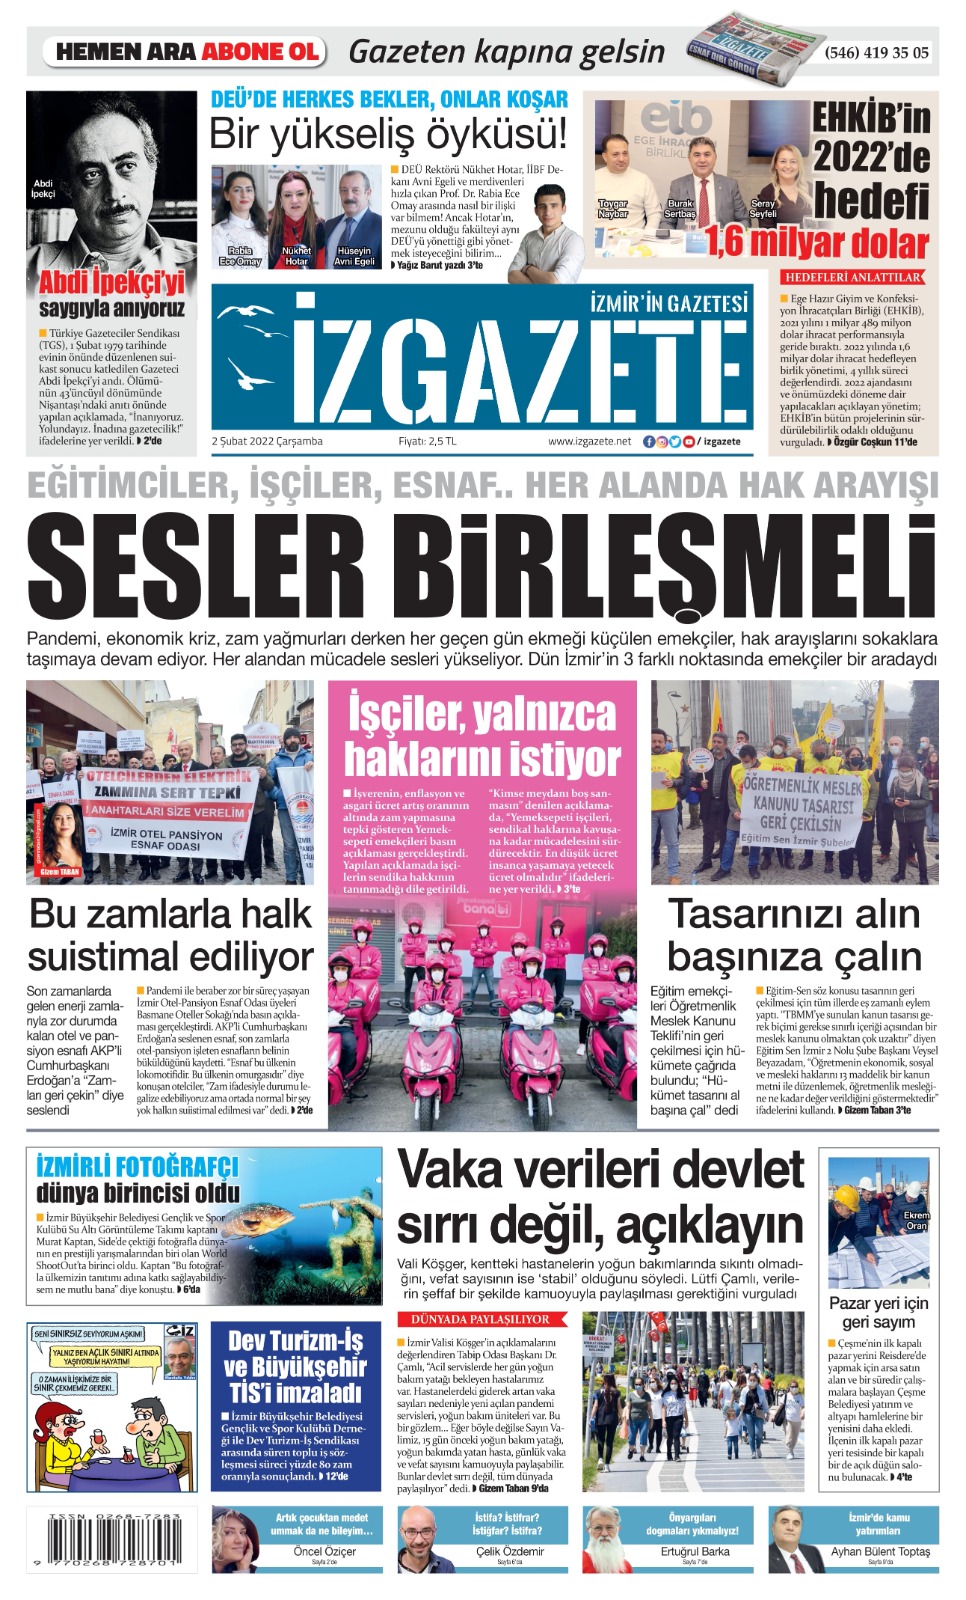 İz Gazete - İzmir'in Gazetesi - 02.02.2022 Manşeti